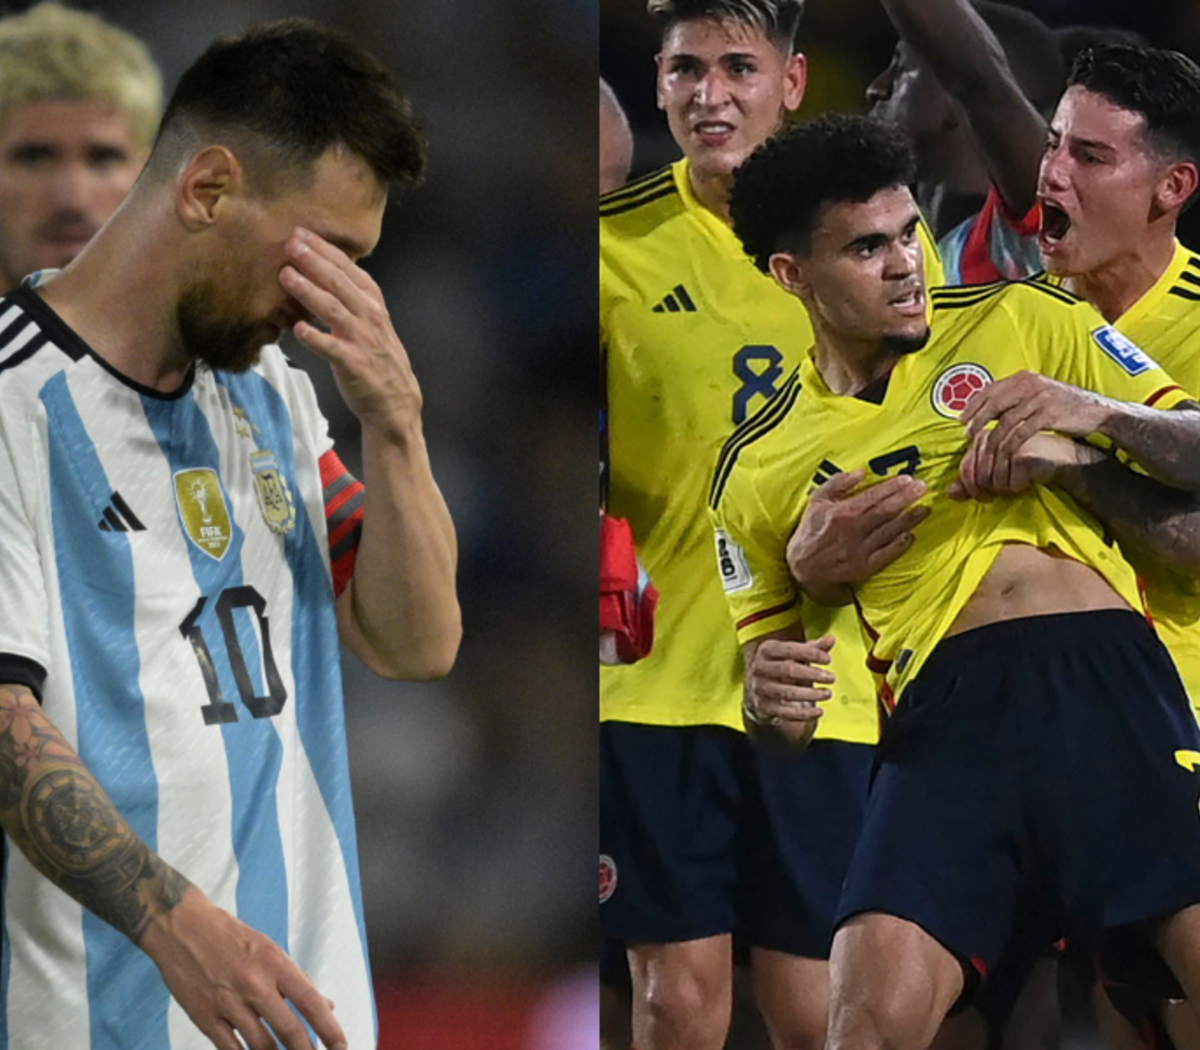 Resultado Uruguay vs Bolivia por Eliminatorias sudamericanas 2026: quién  ganó, marcador y goles del partido